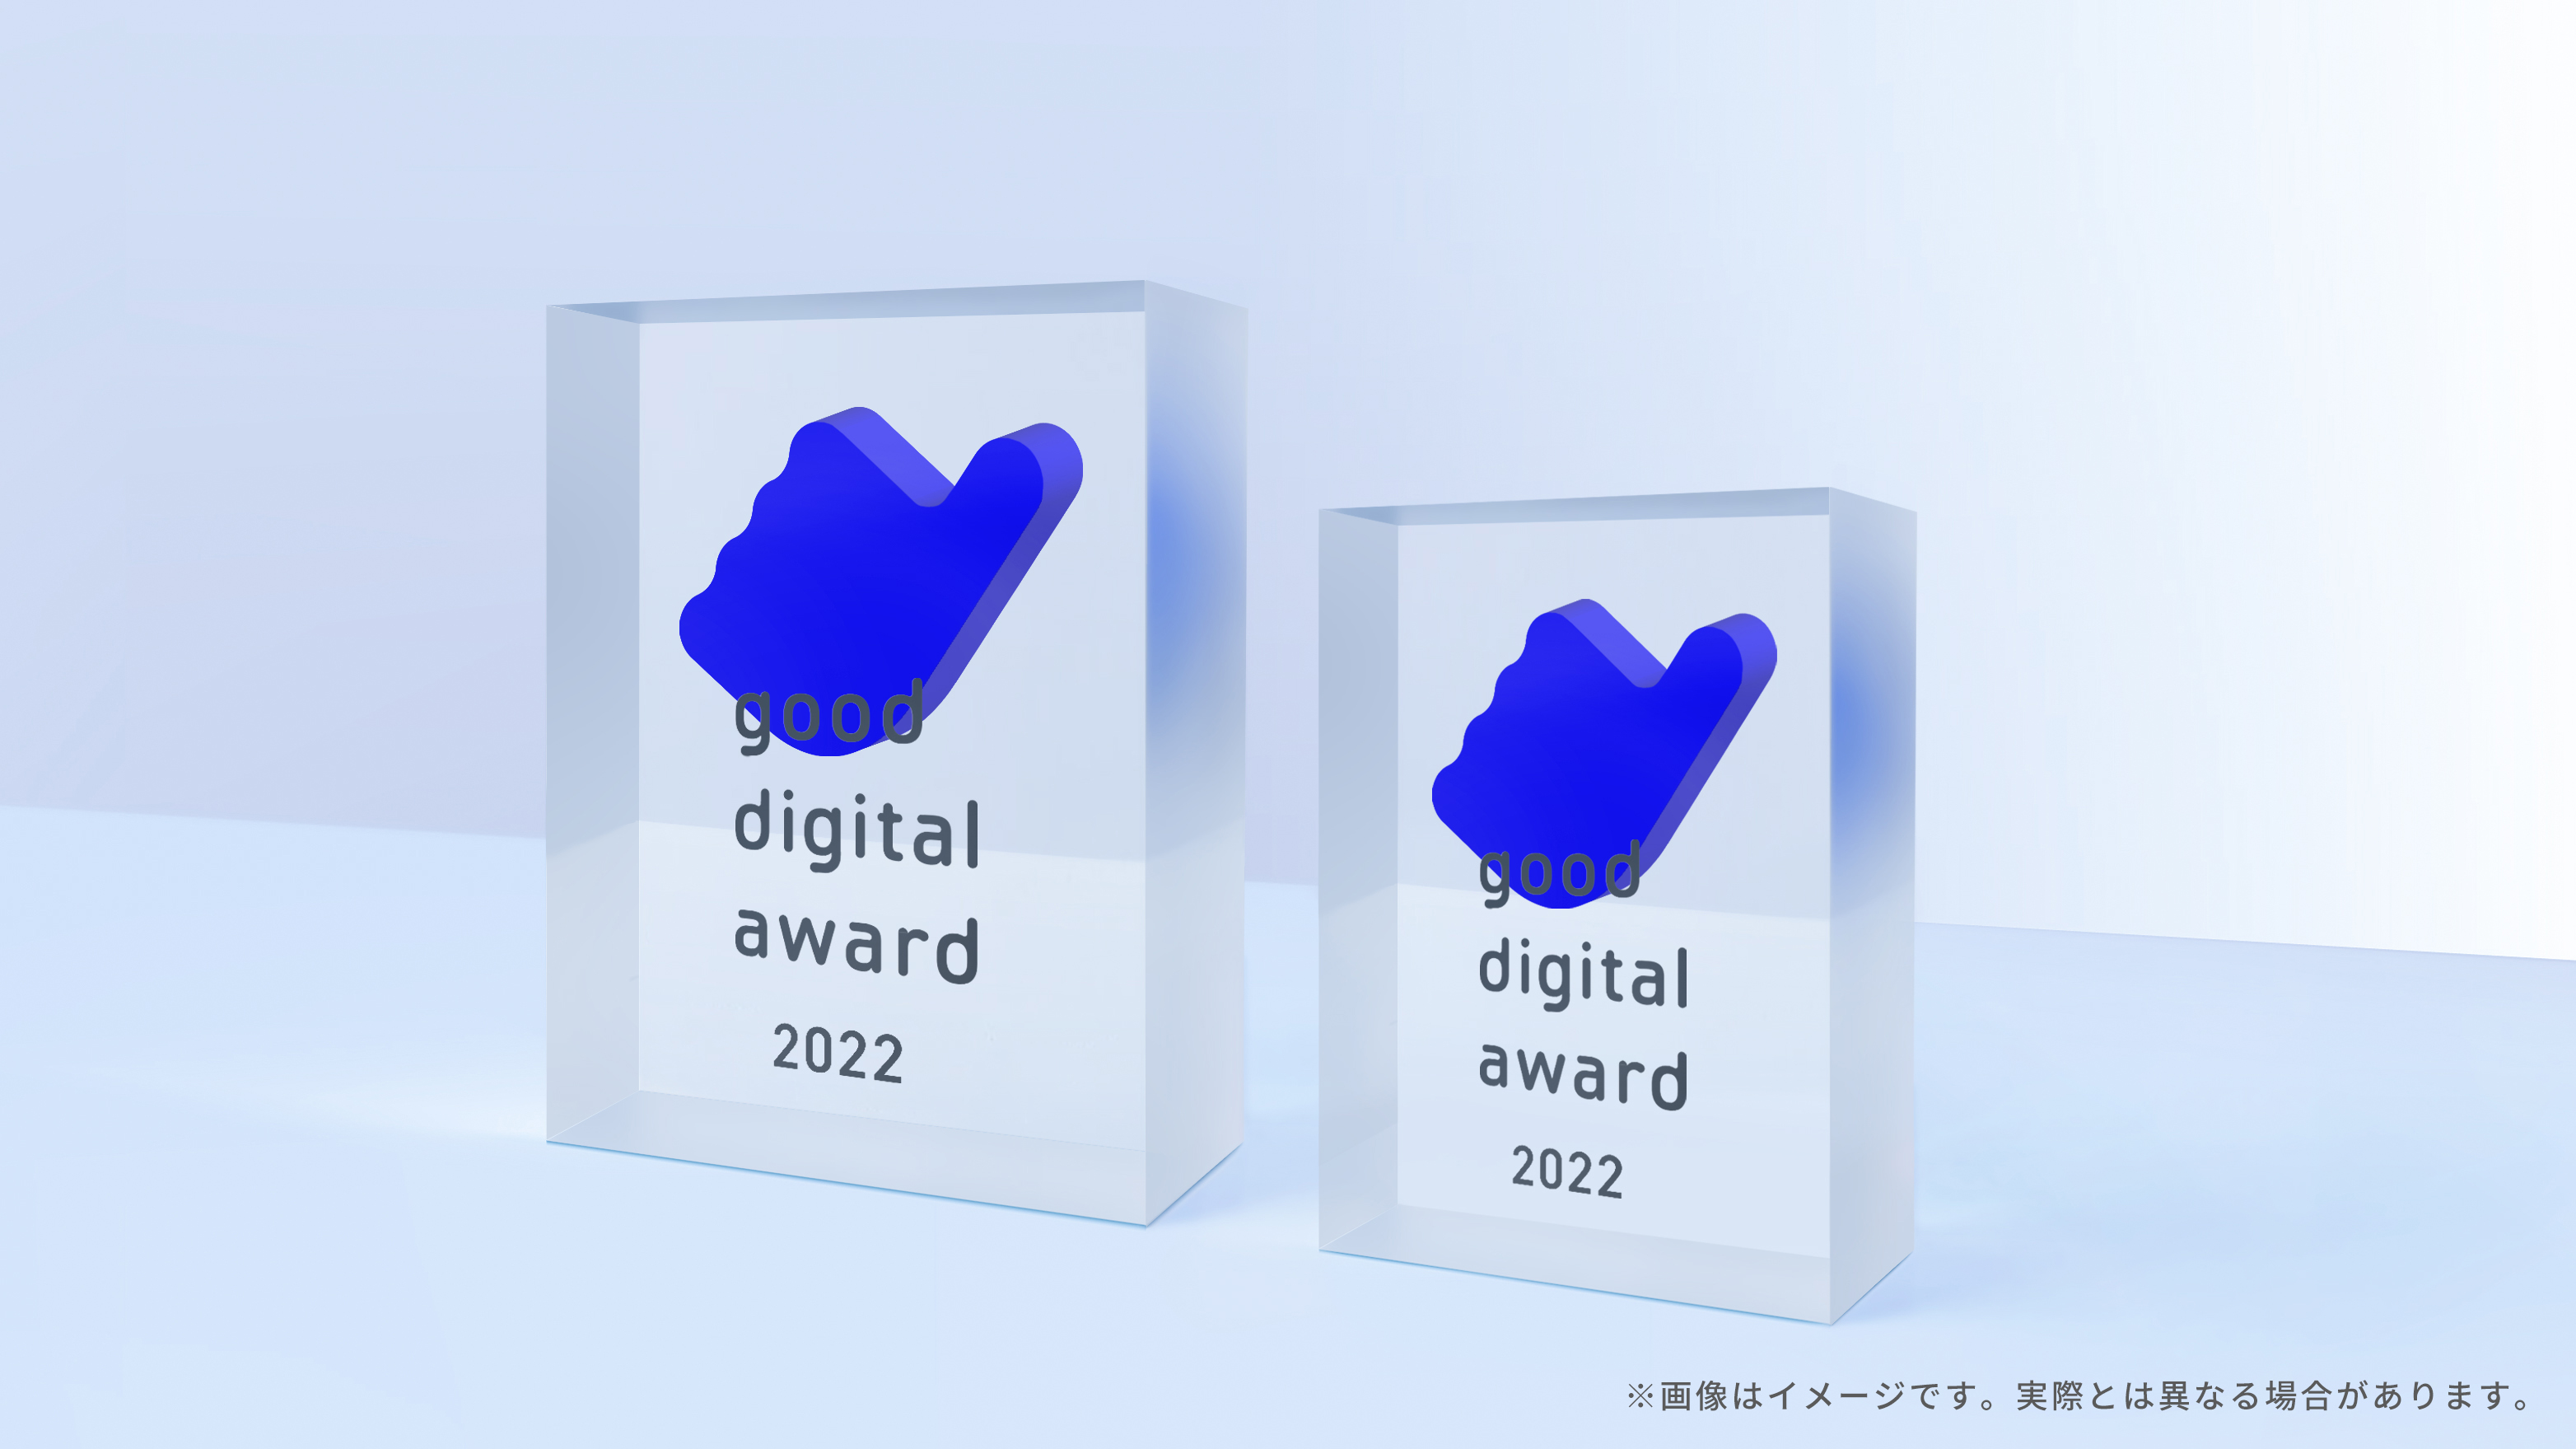 good digital awardのトロフィー2つの3DCGイメージ。トロフィーは透明な直方体の中心からやや上の箇所にgood digital awardのロゴマークである親指を抽象化したマークが埋め込まれている。直方体の表面にはgood digital award 2022というテキストが単語ごとに改行されて4行になった状態で刻印されている。大きさの違う2つのトロフィーは横に並べられていて、正面よりやや斜め方向から見たアングルのCGになっている。